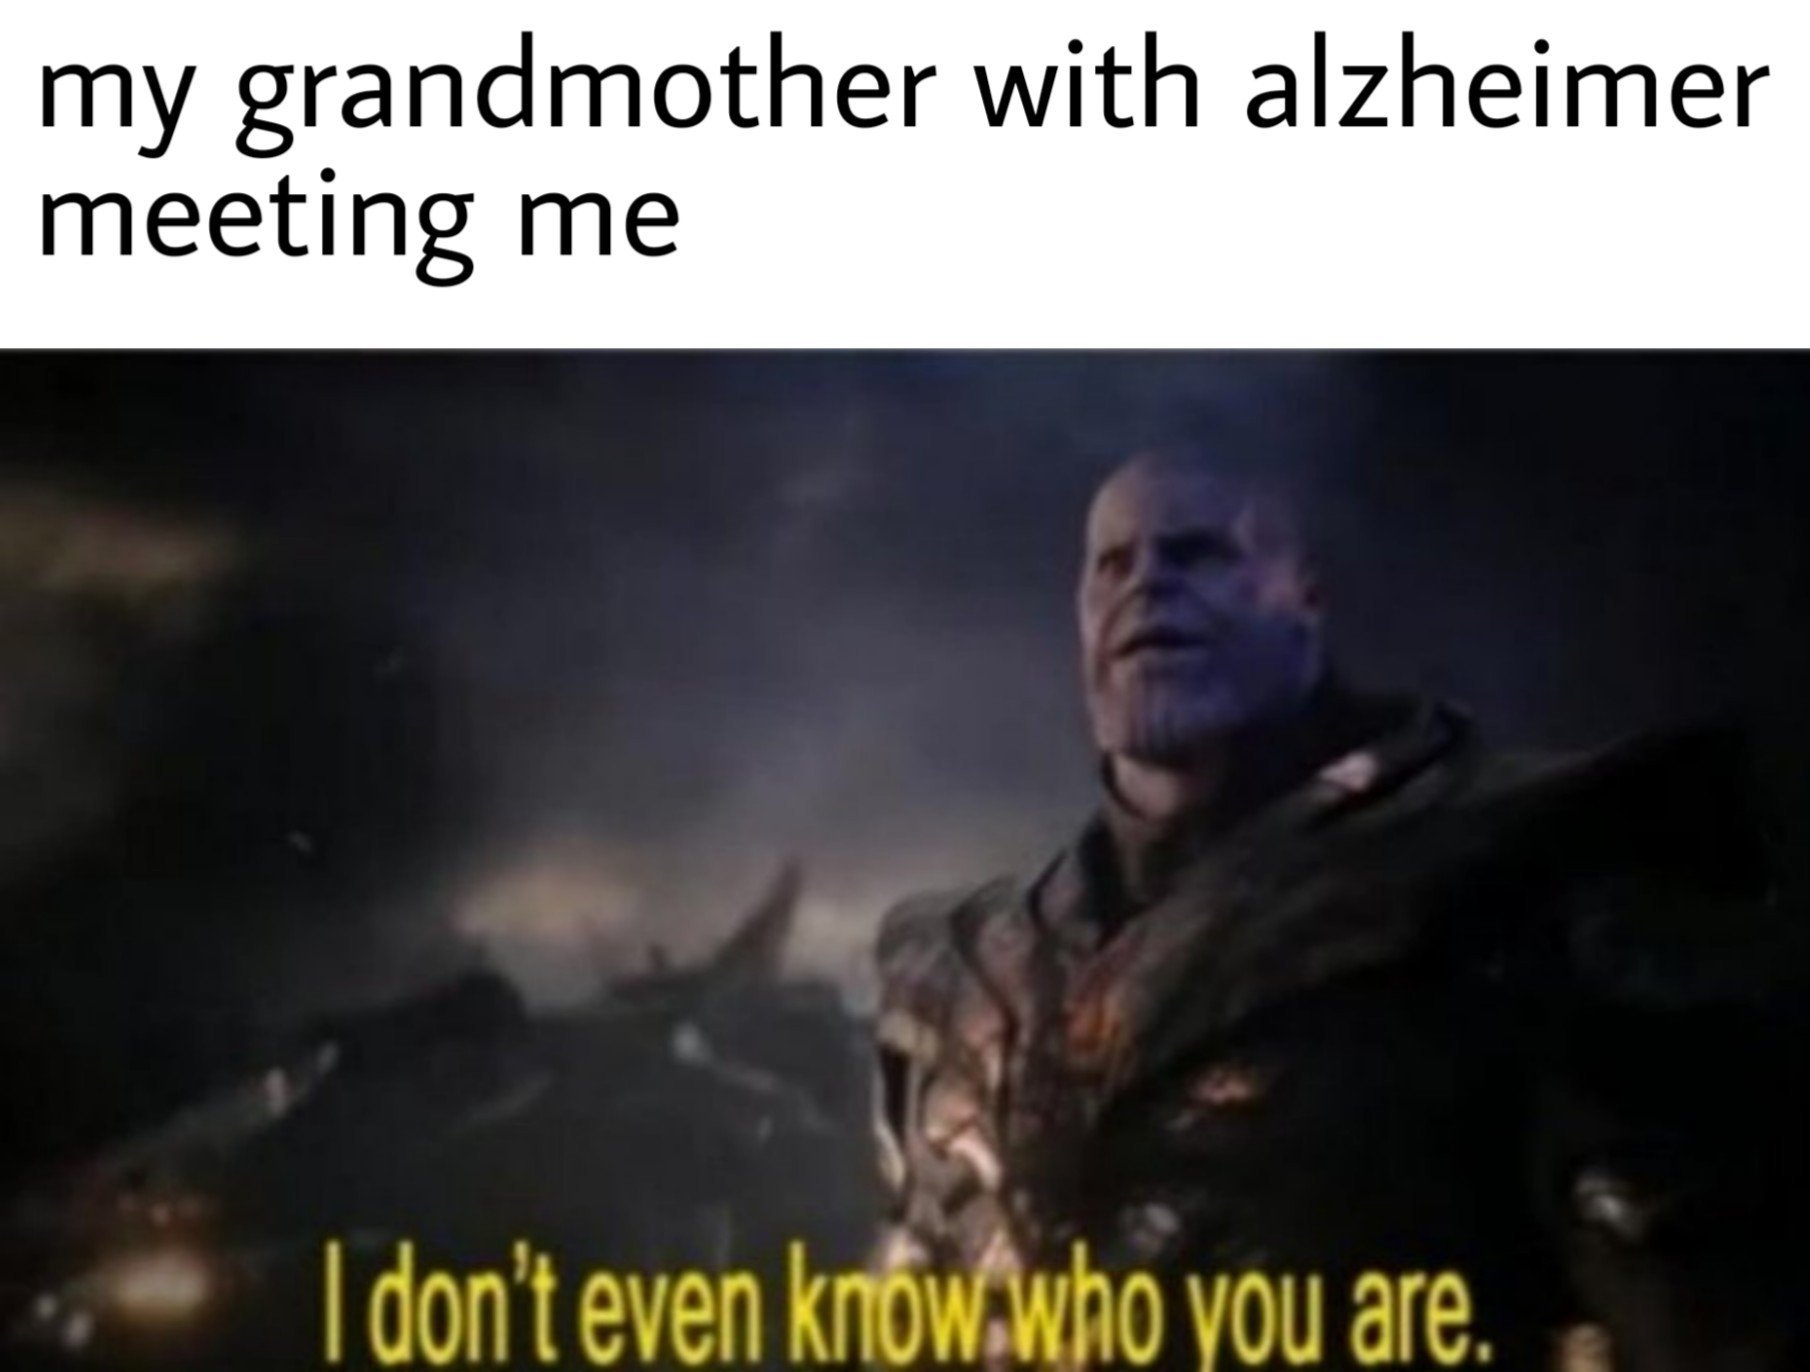 Love you too Grandma - meme